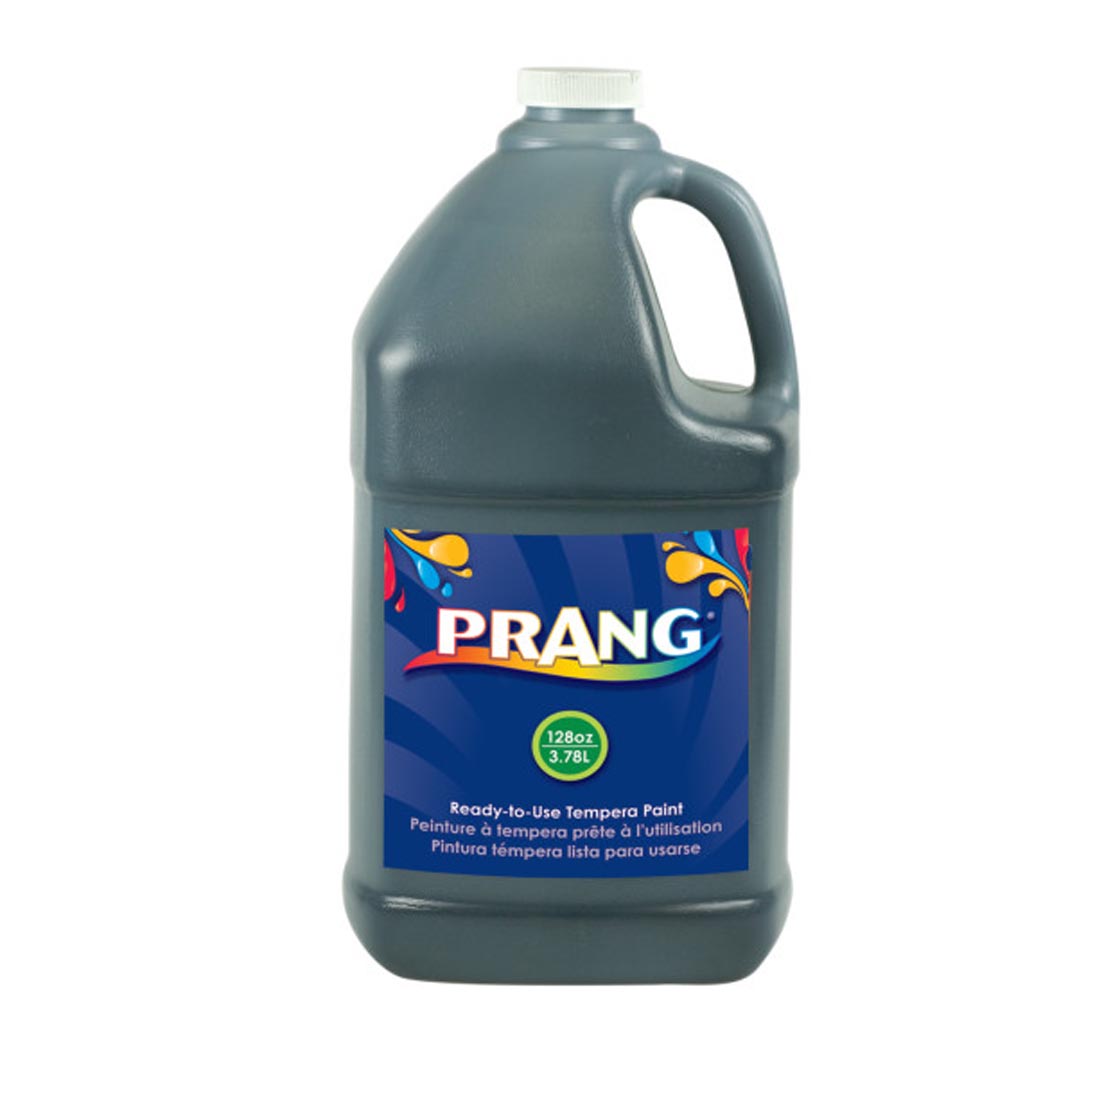 Gallon Jug of Black Prang Ready-To-Use Tempera Paint